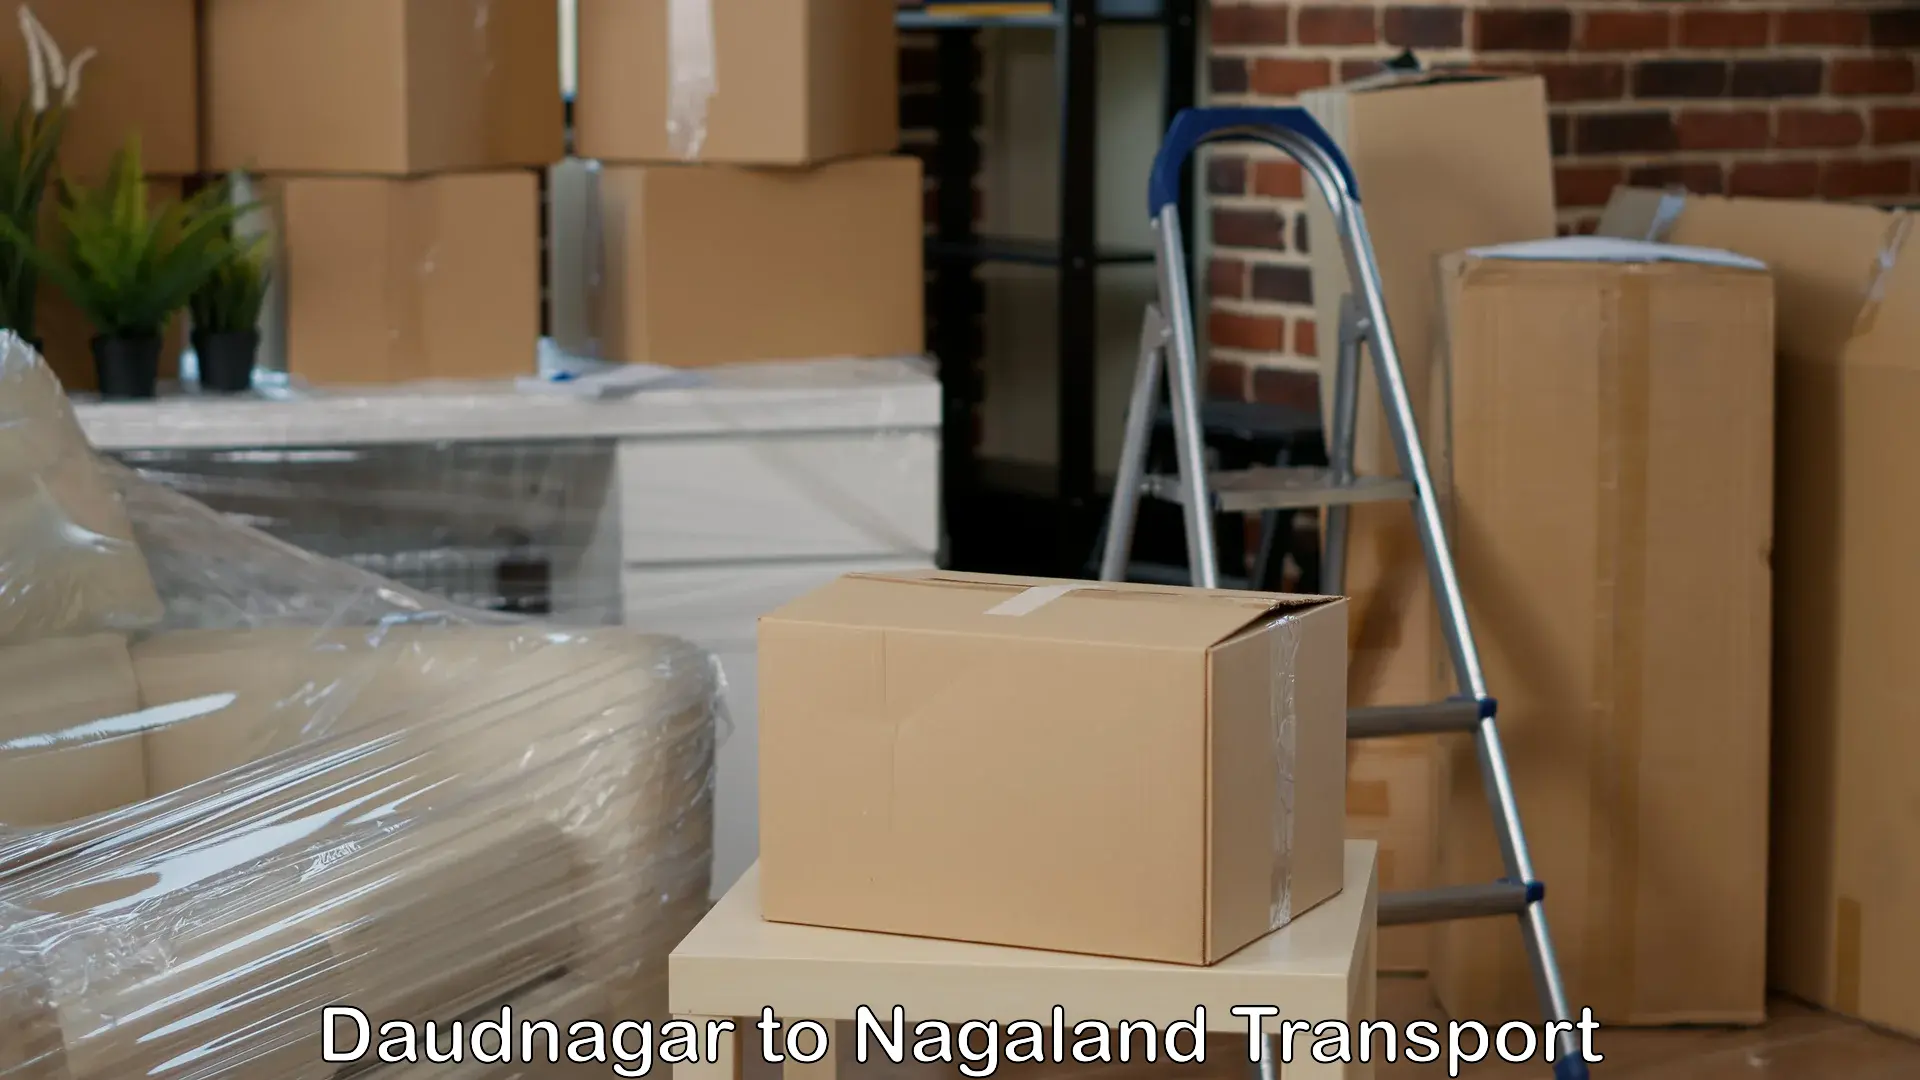 Bike shipping service in Daudnagar to Nagaland